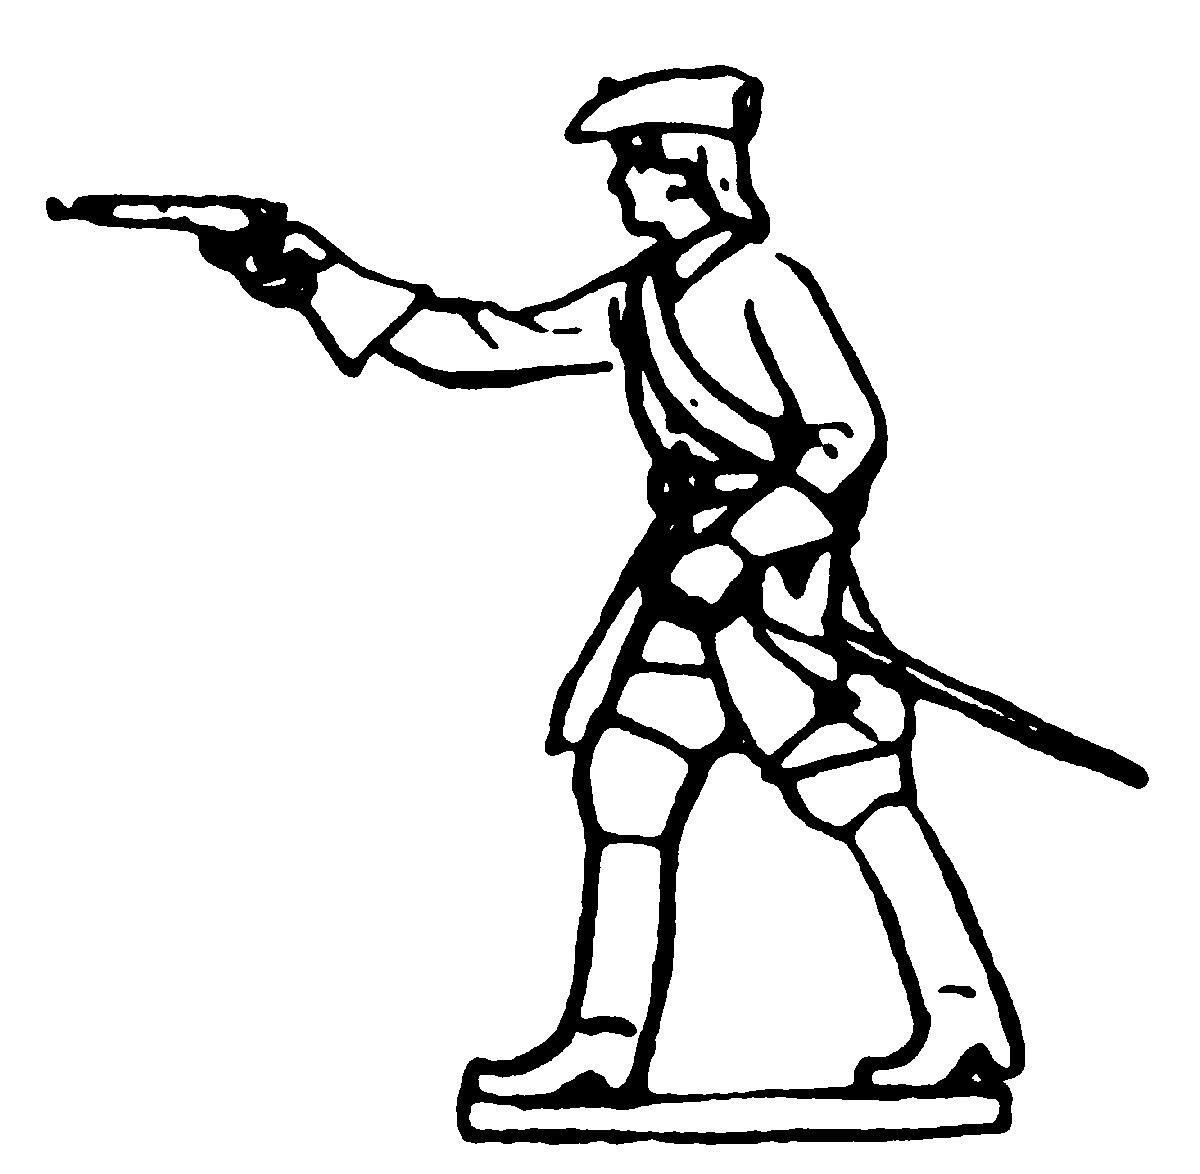 Prince August 46 Zinngiessform 18. Jh.Soldat mit Pistole